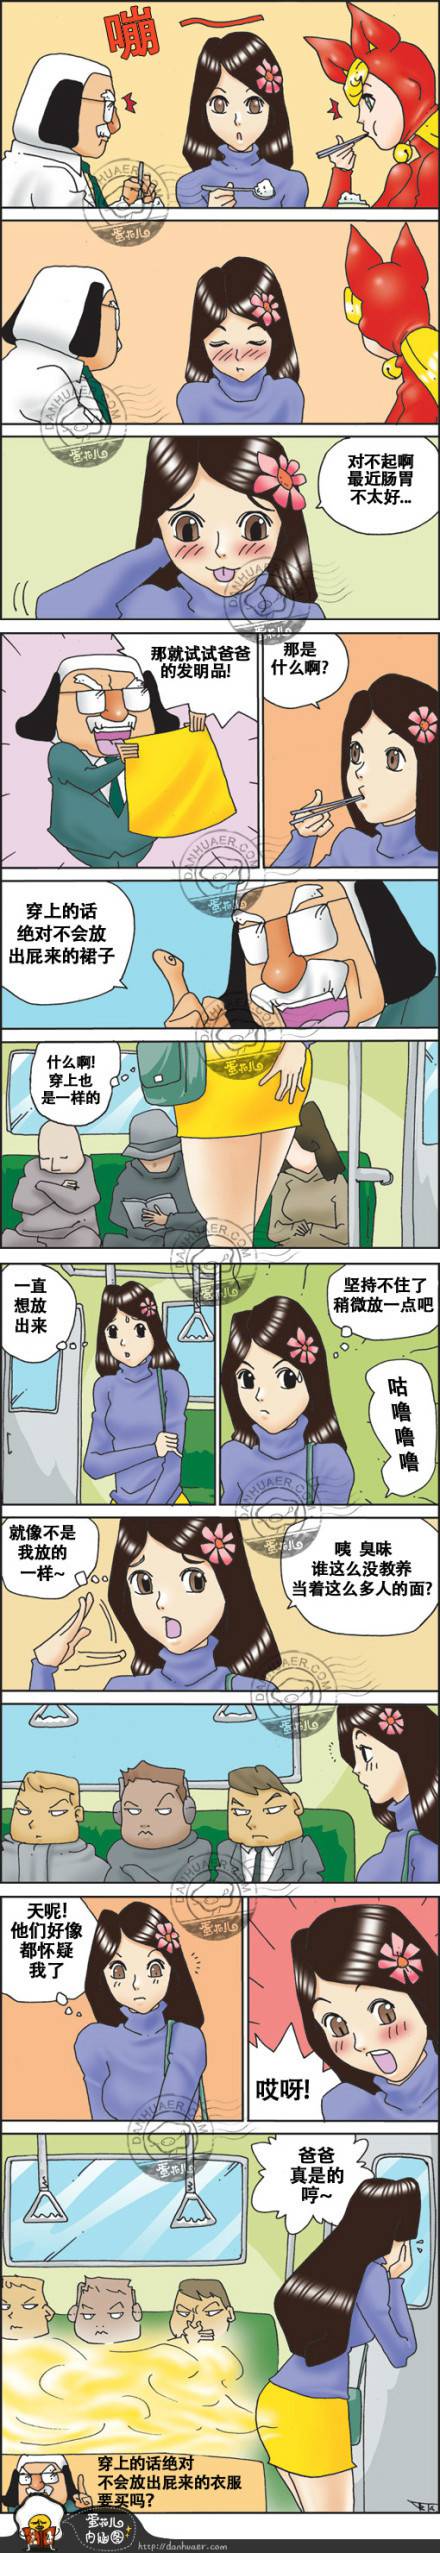 邪恶漫画爆笑囧图第261刊：新龟兔赛跑